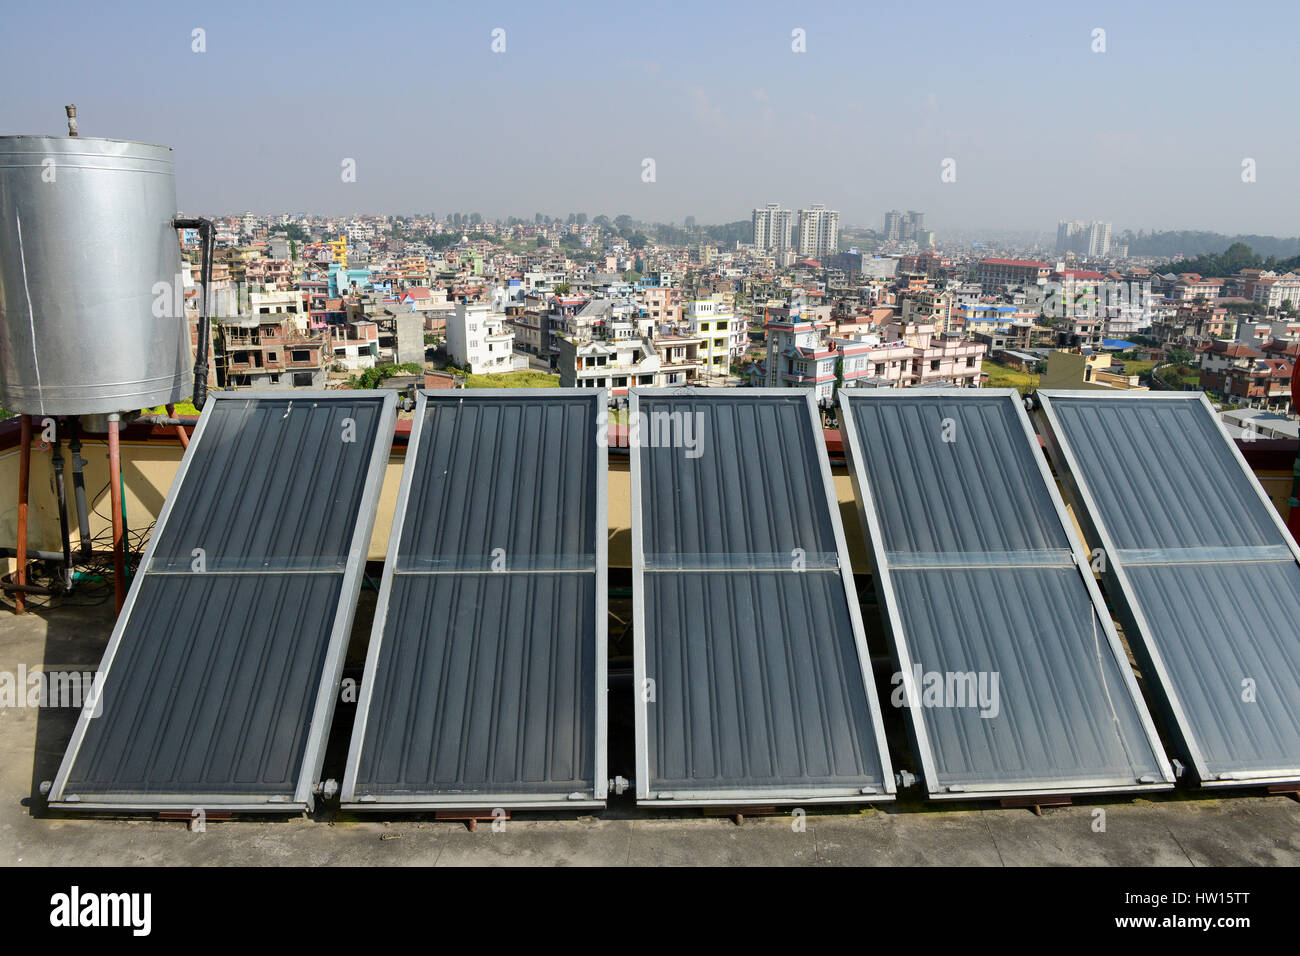 Il Nepal Kathmandu, appartamento edificio con collettore solare per il riscaldamento di acqua / Haus mit Sonnenkollektor fuer Warmwasseraufbereitung Foto Stock